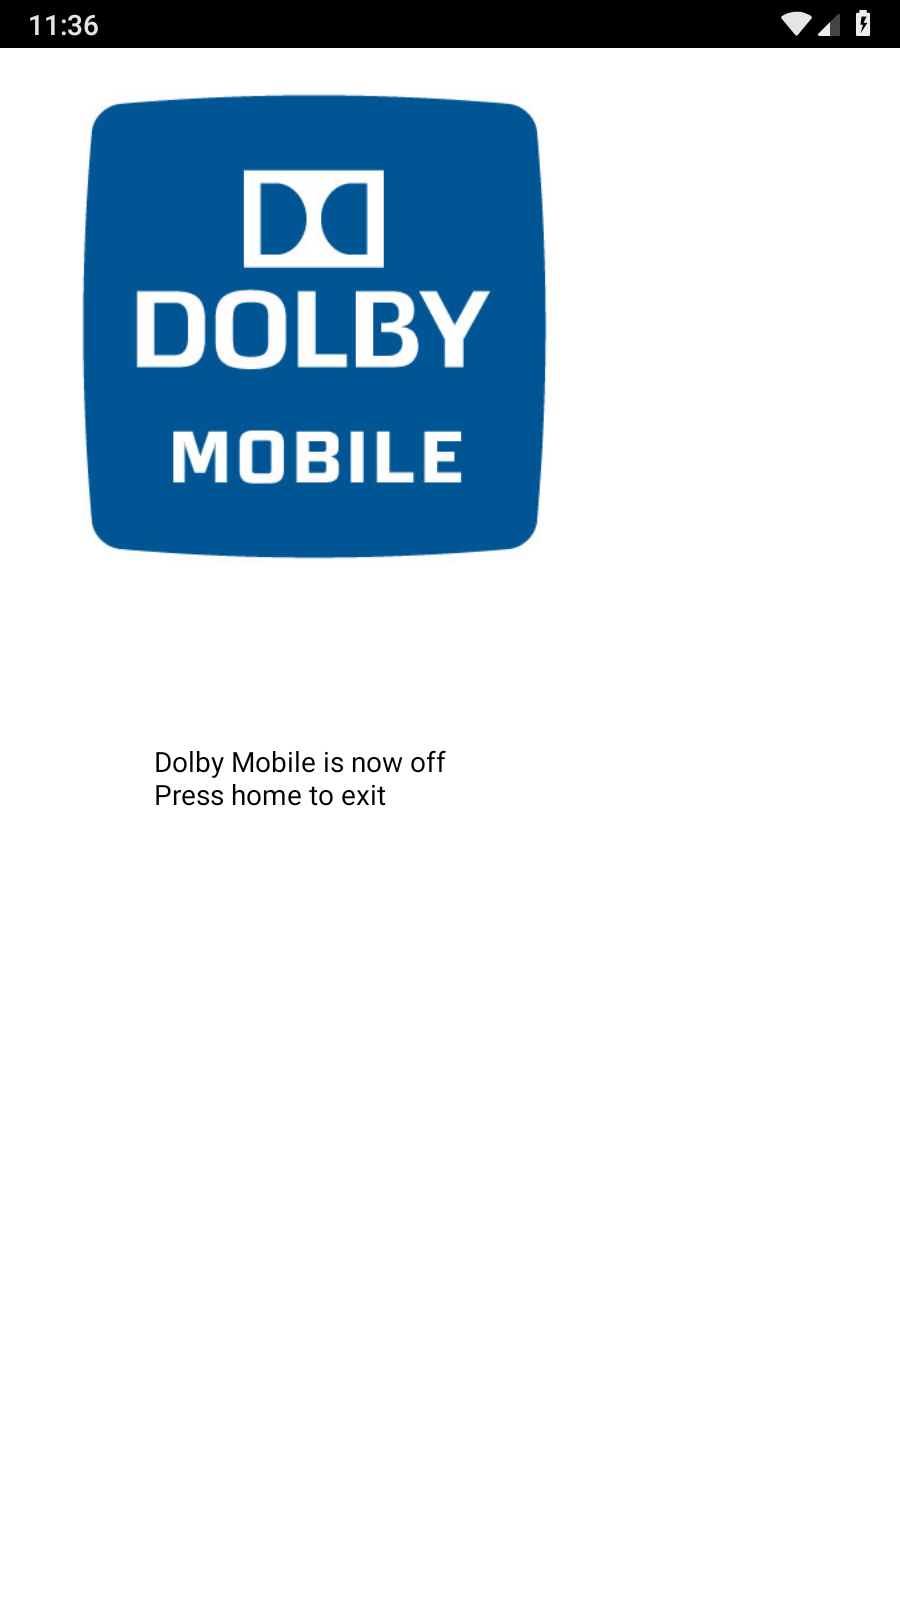 杜比音效app下载安装-杜比音效手机版下载 3.6